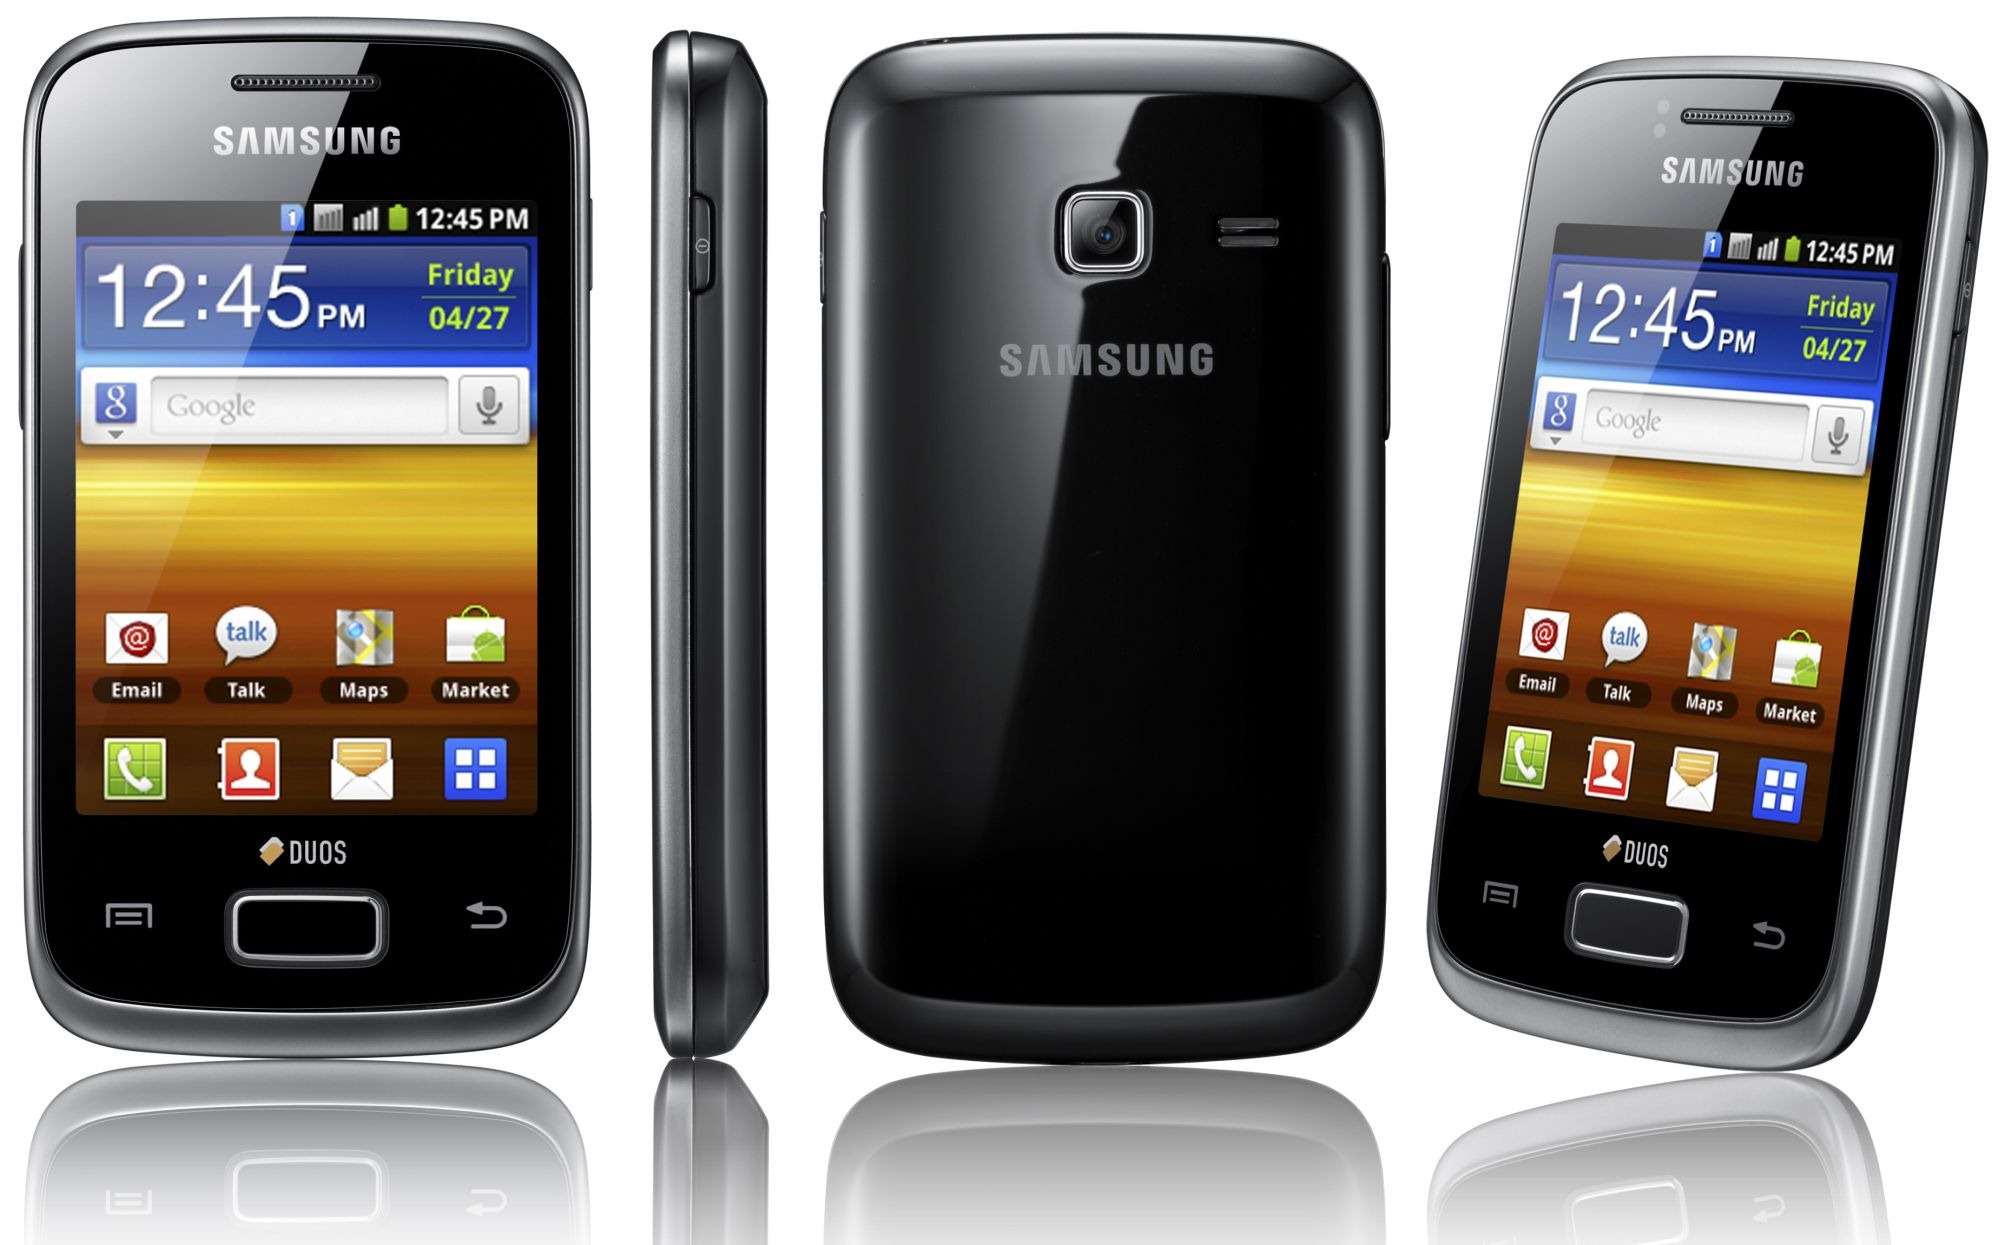 Galaxy Y là một model khá ăn khách của Samsung nhờ có kiểu dáng tốt và giá rẻ dưới 2 triệu đồng